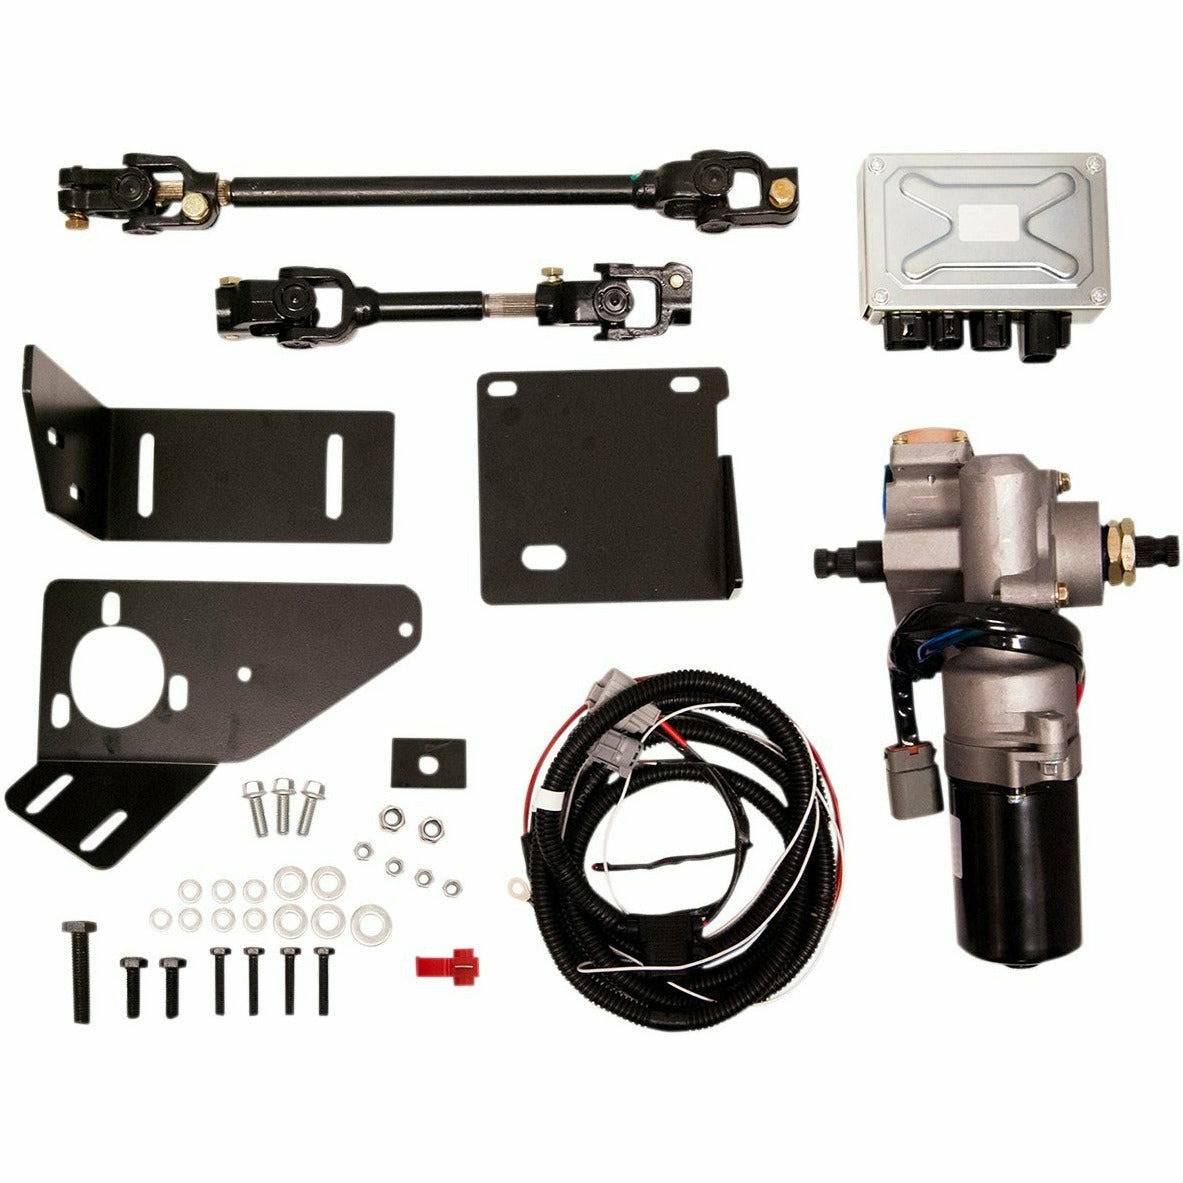 Moose Utilities Can Am Commander (2011-2014) Power Steering Kit